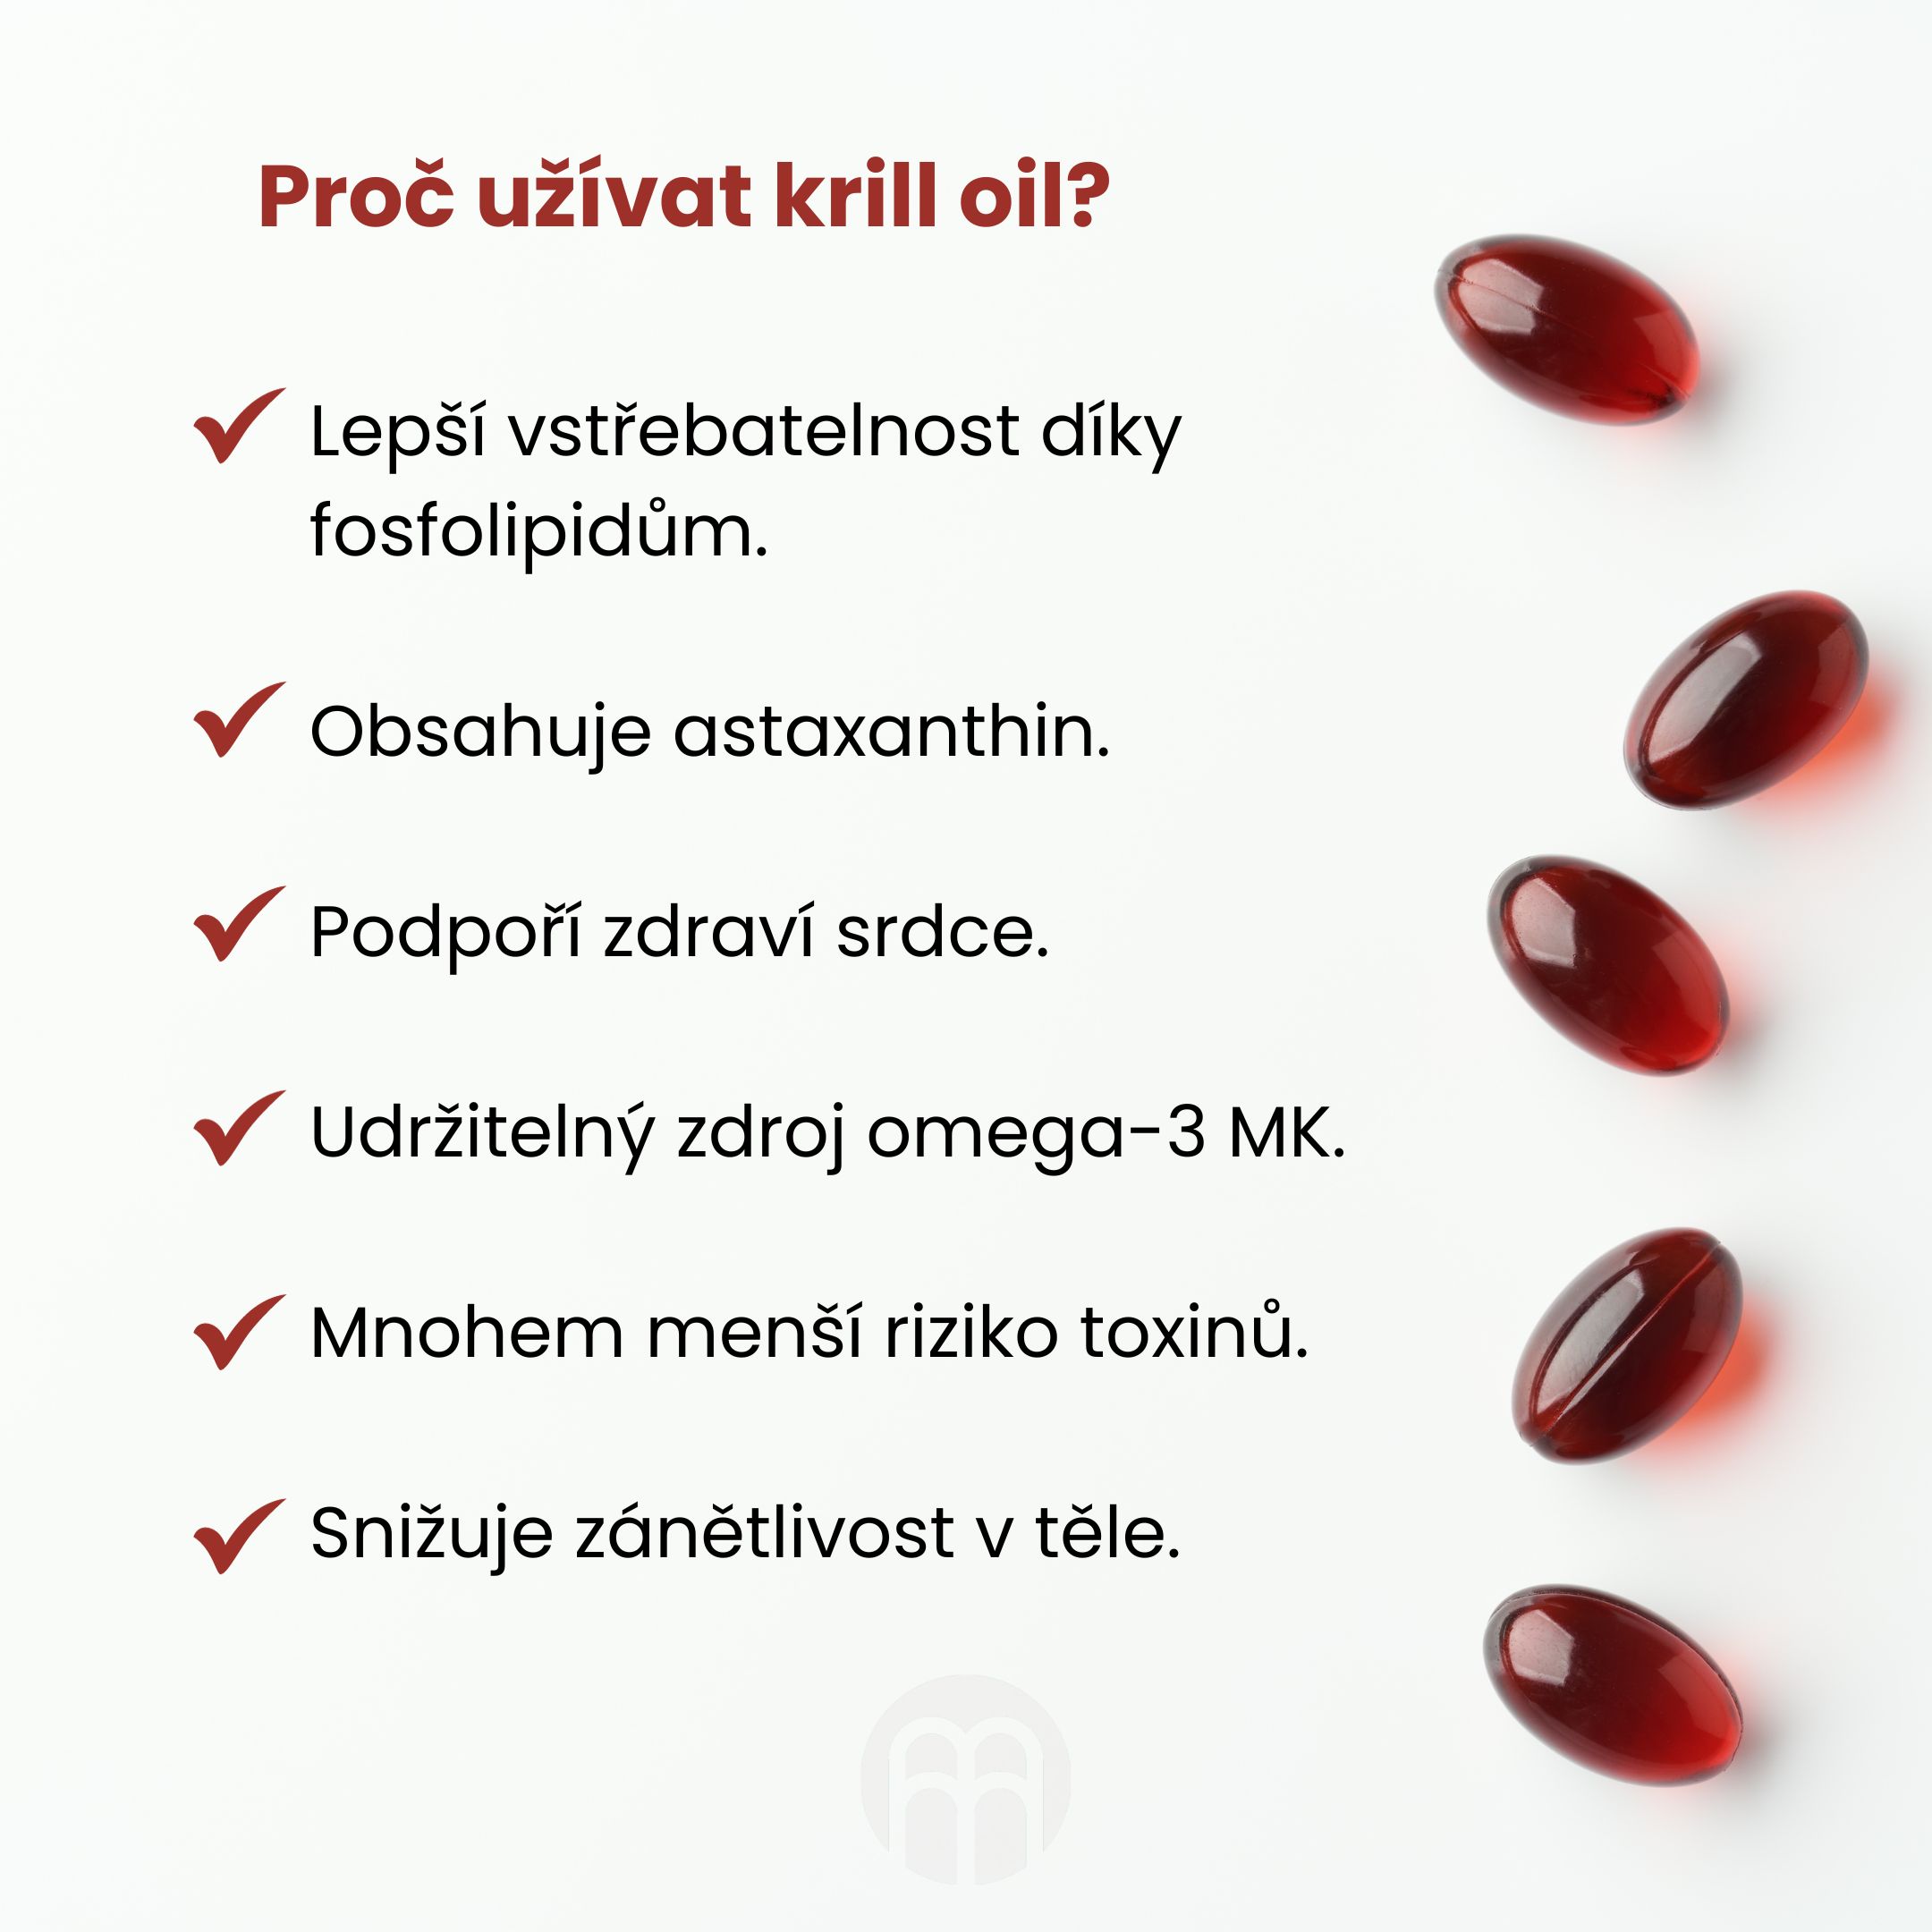 Pro užívat krill oil